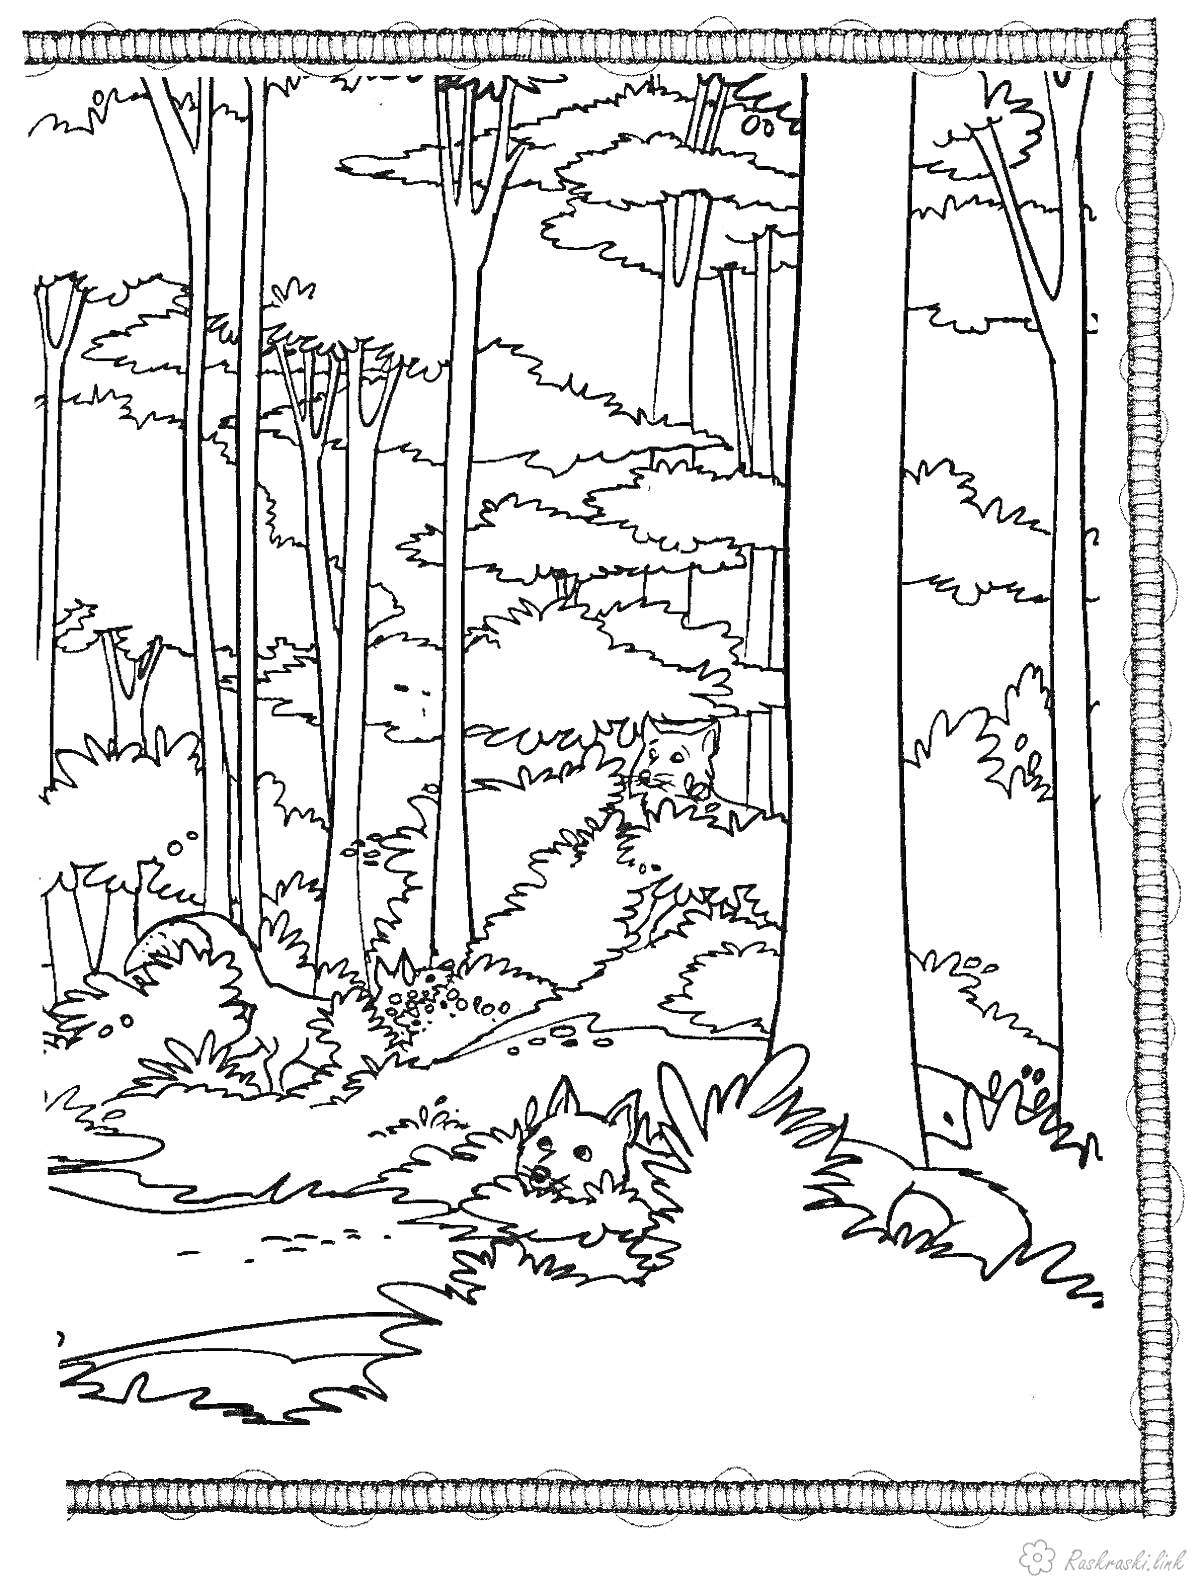 Раскраска Лес с деревьями и кустами, спрятавшийся волк